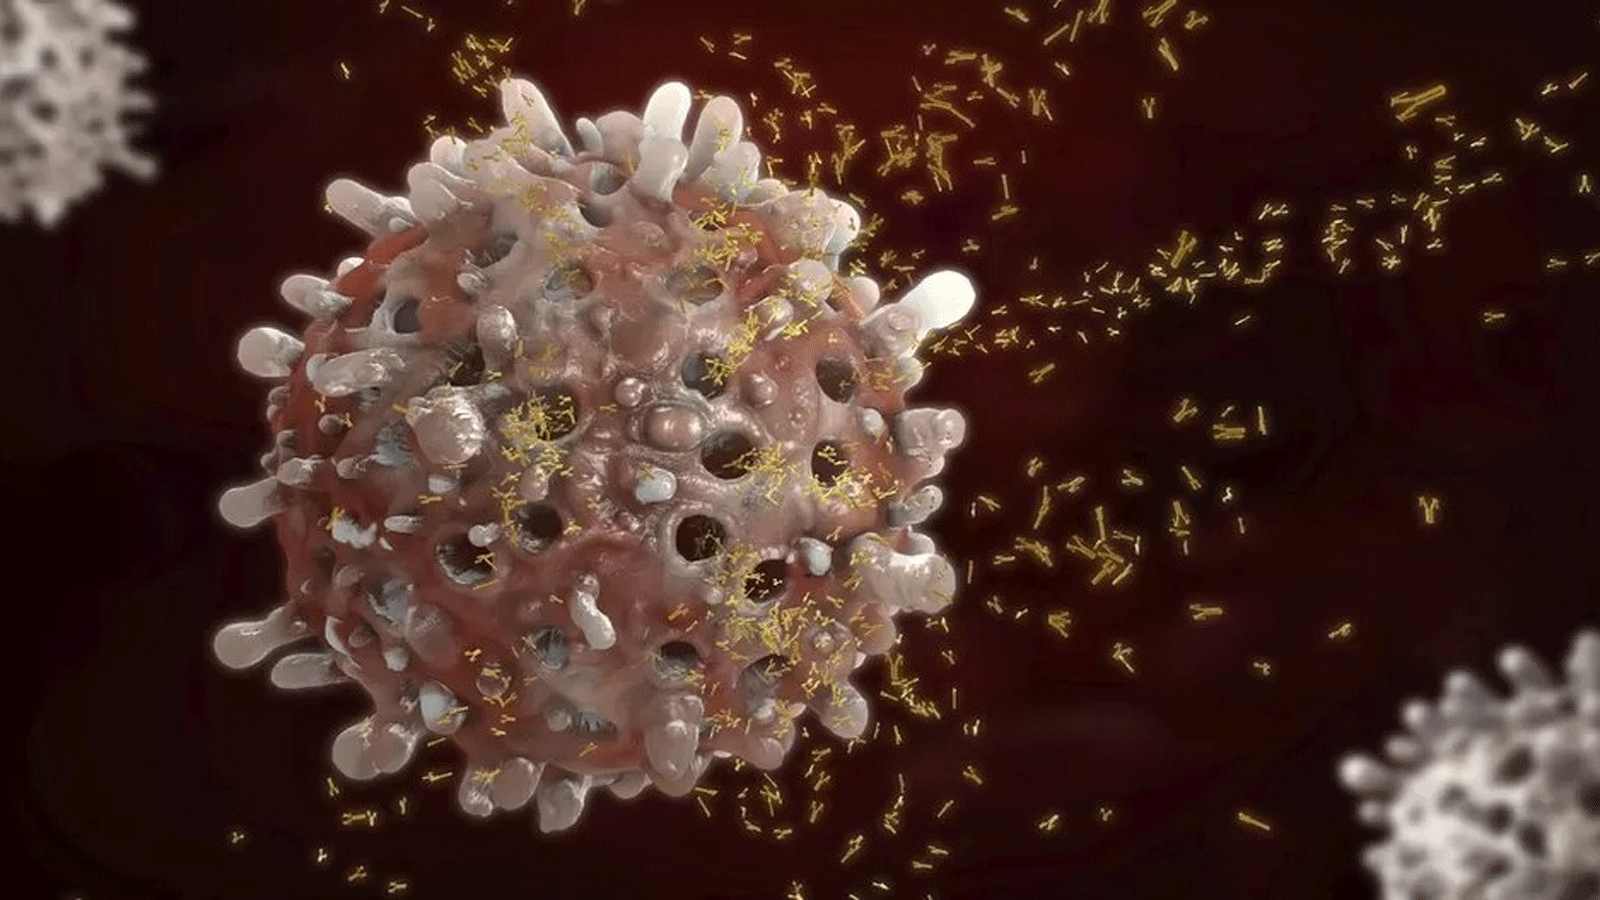 الخلايا البائية، تُنتج كتلًا من الأجسام المضادة التي يمكن أن تساعد في مهاجمة السرطان